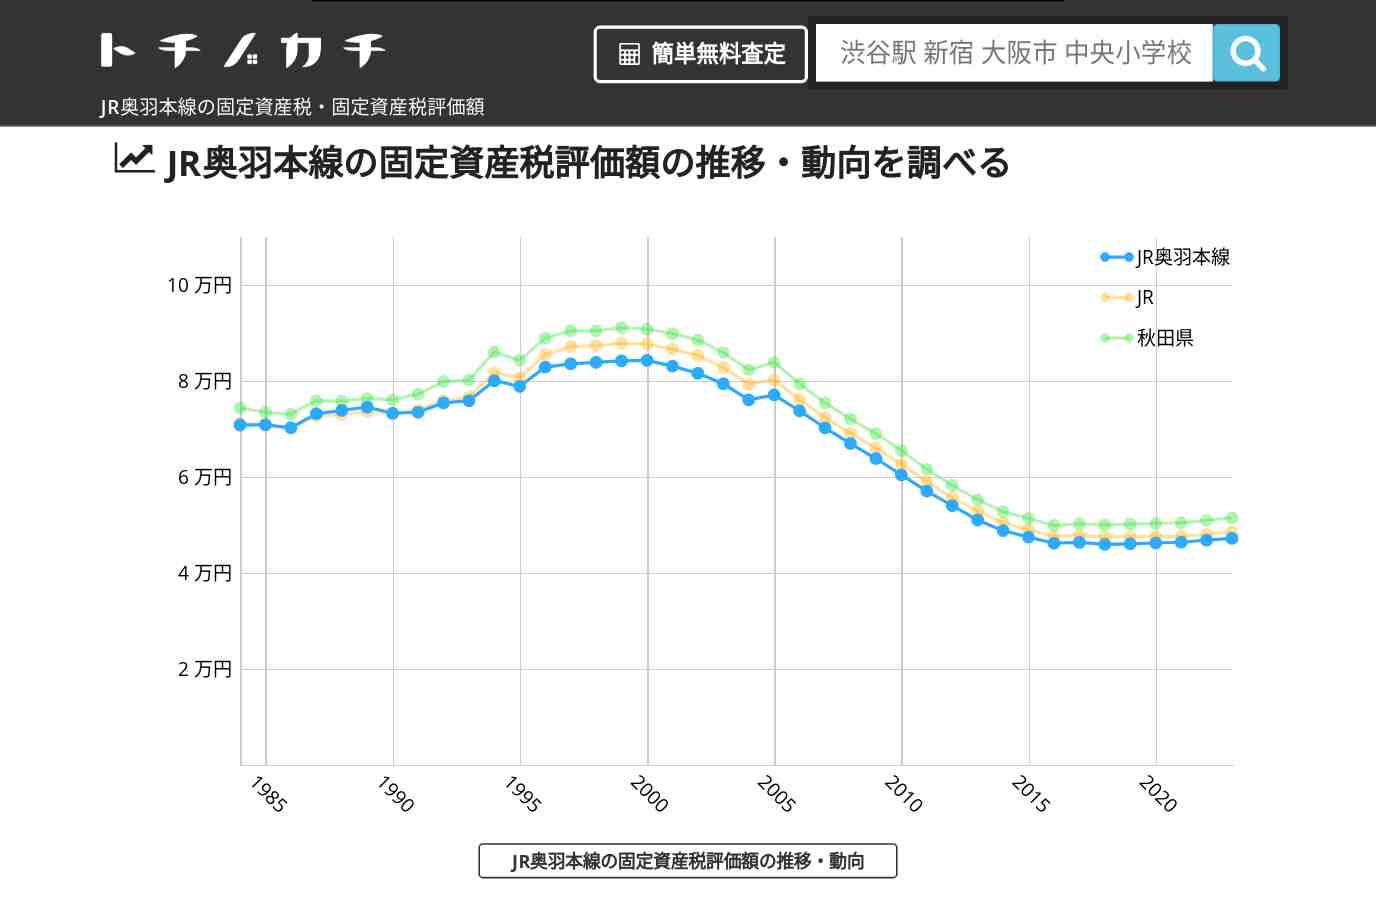 JR奥羽本線(JR)の固定資産税・固定資産税評価額 | トチノカチ